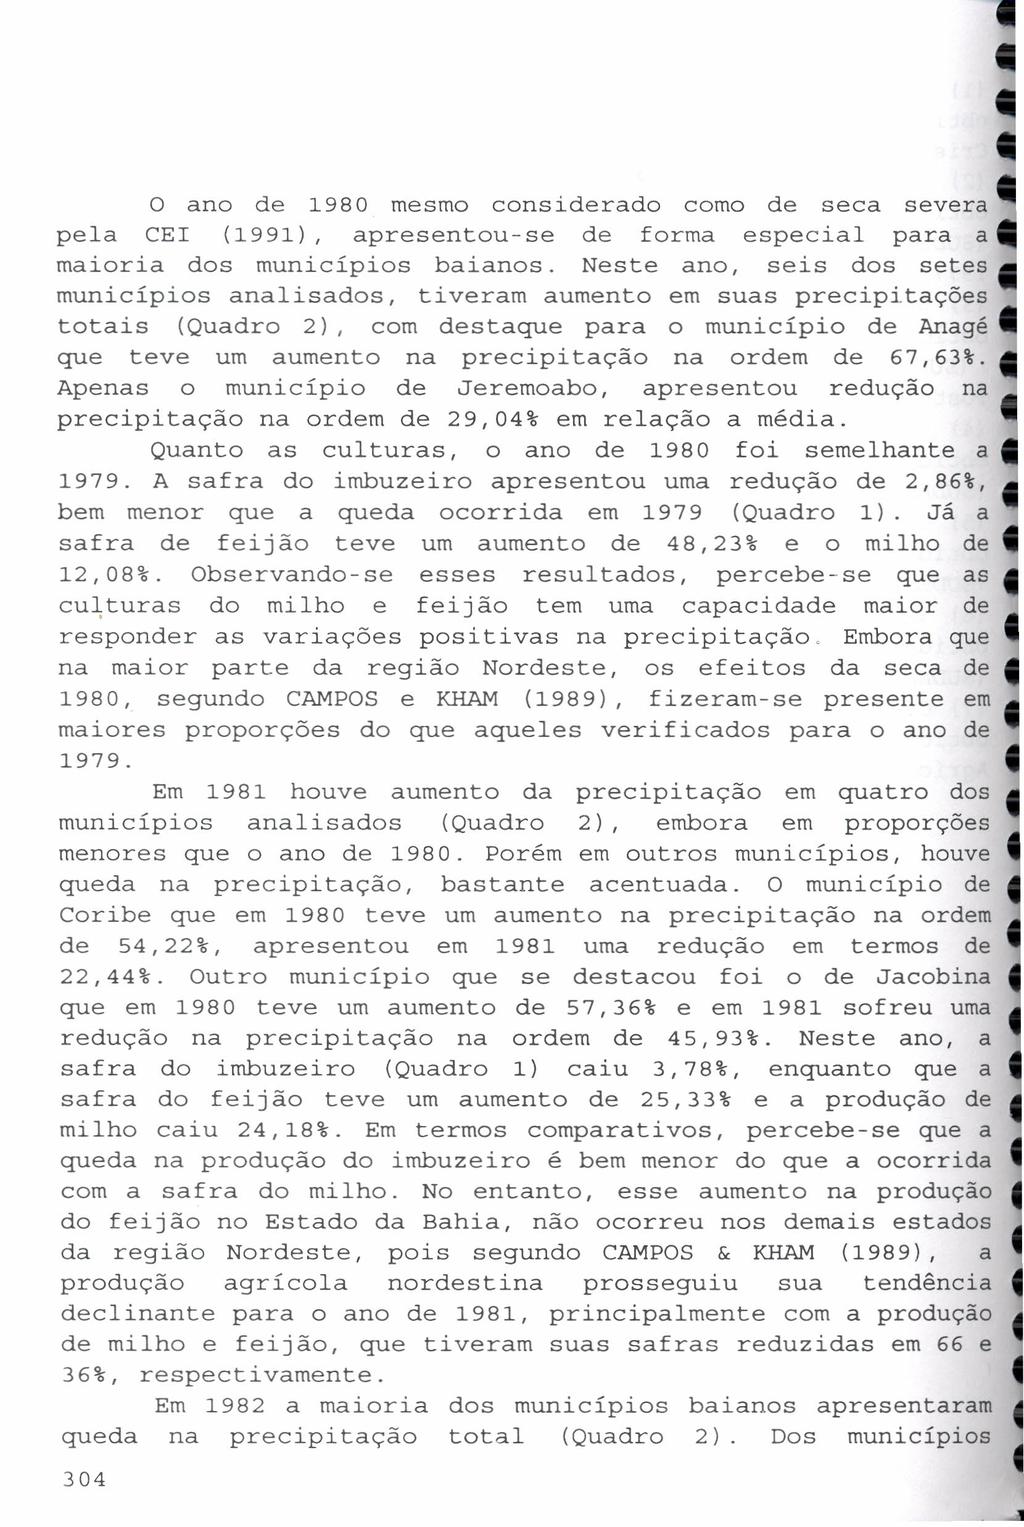 o ano de 1980 mesmo considerado como de seca severa pela CEI (1991), apresentou-se de forma especial para a maioria dos municípios baianos.